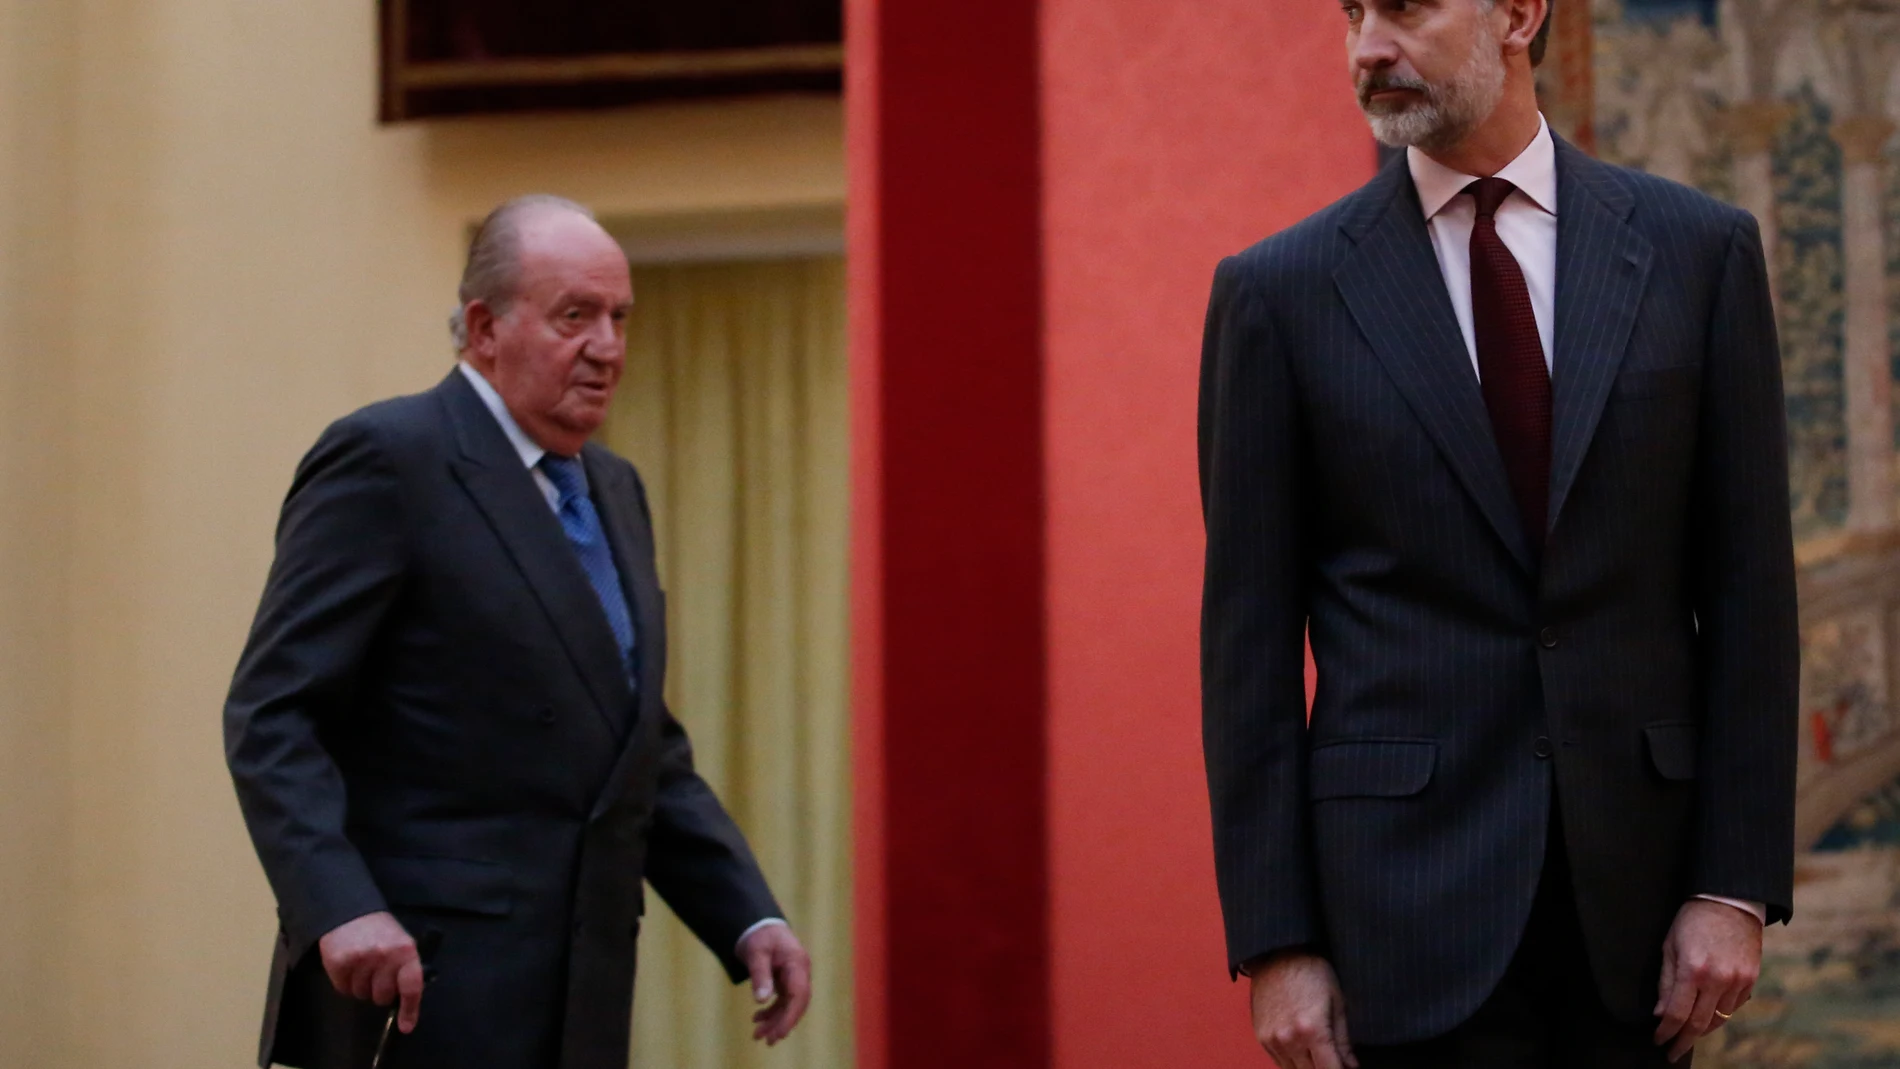 © J. FDEZ. - LARGO 20181203El Rey Felipe y el Rey emérito Juan Carlos reciben en el Palacio de El Pardo en Audiencia al Consejo asesor de las Cortes Generales para la conmemoración del 40 aniversario de la Constitución .